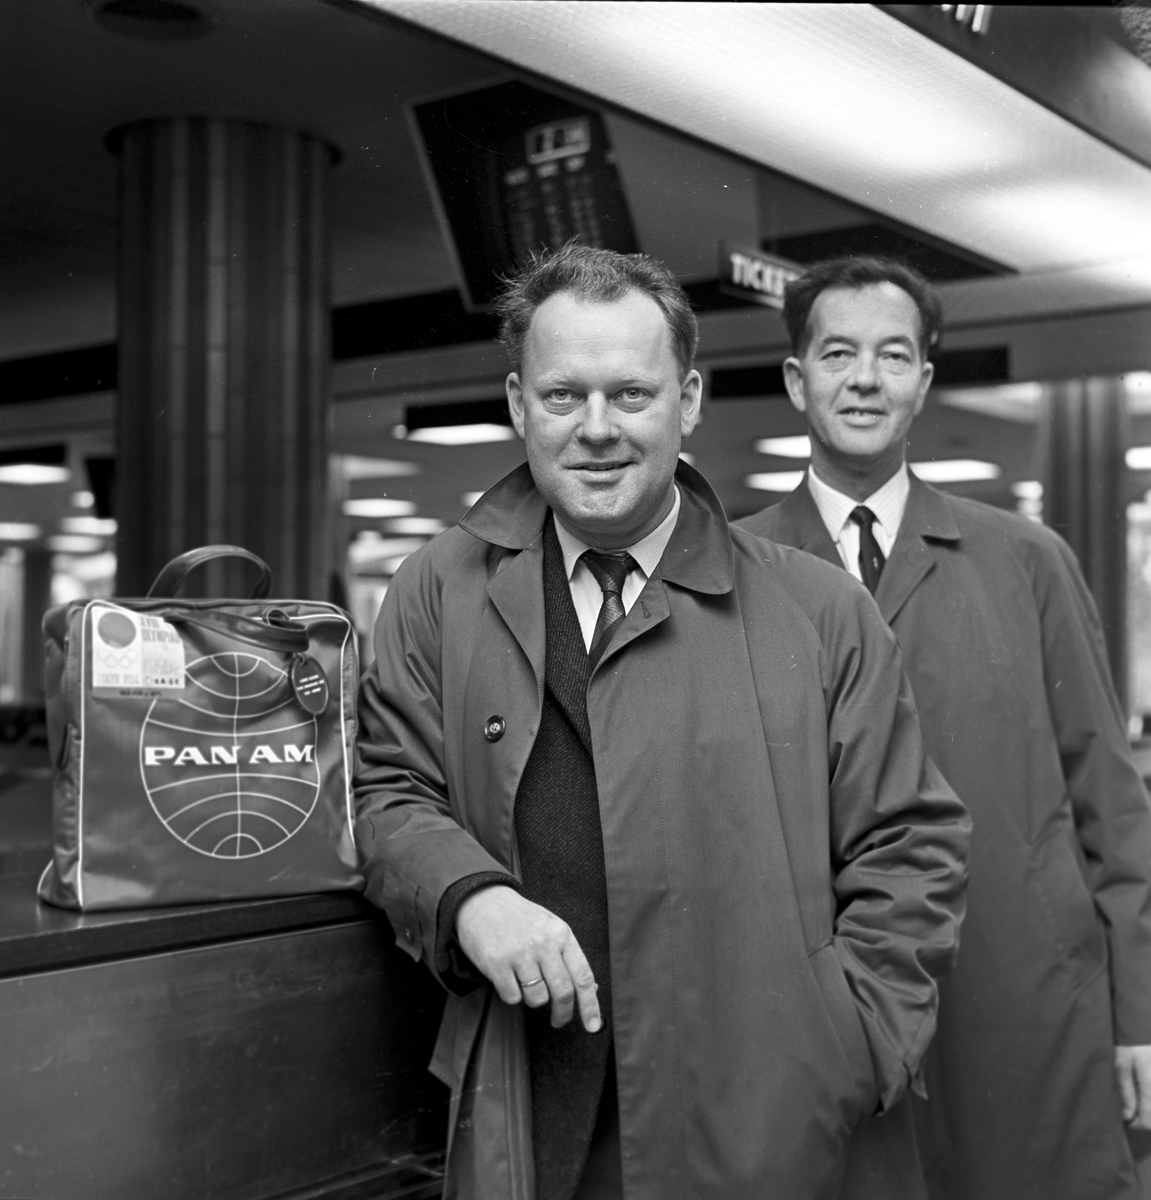 NRK-reporter Bjørge Lillelien (foran) på reisefot. Fotografert 1964.